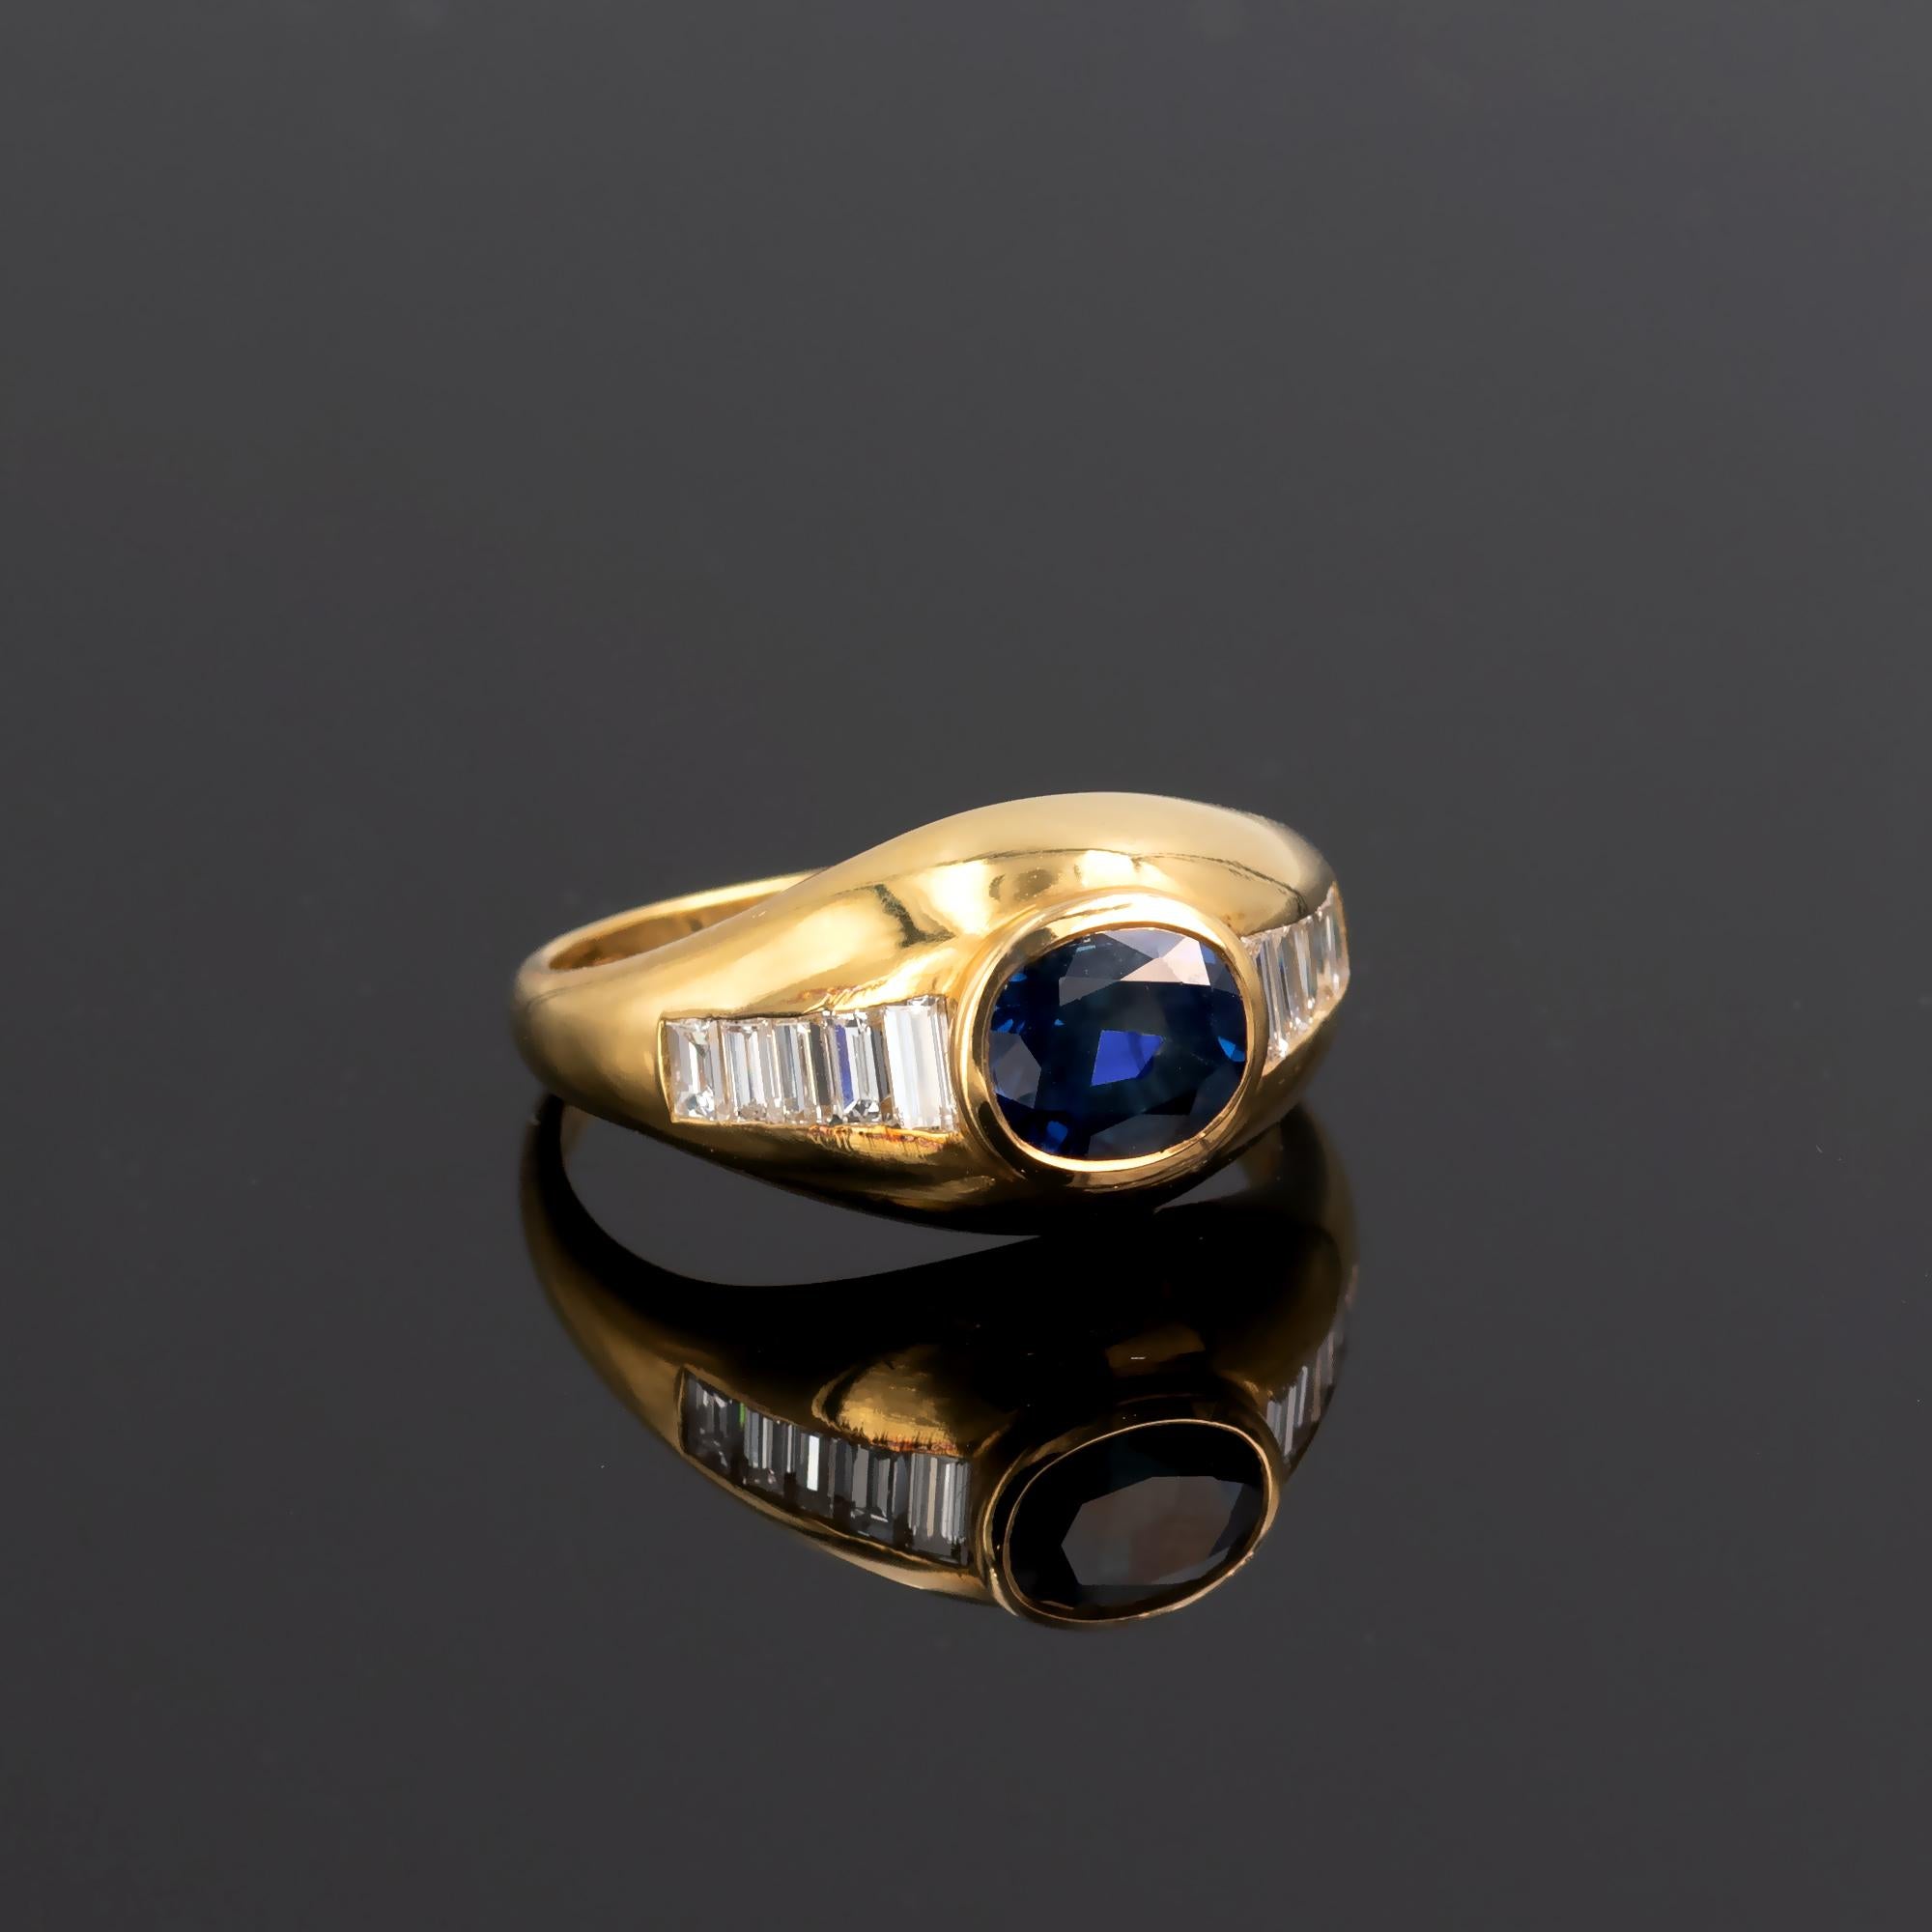 Zeitgenössischer Ring aus 18-karätigem Gelbgold mit einem intensiven blauen Saphir im Ovalschliff in der Mitte und zehn Diamanten im Baguetteschliff an den Seiten. Es ist ein gut gemachter, zeitloser Ring mit modernem Design.
Einzelheiten:
Saphir: